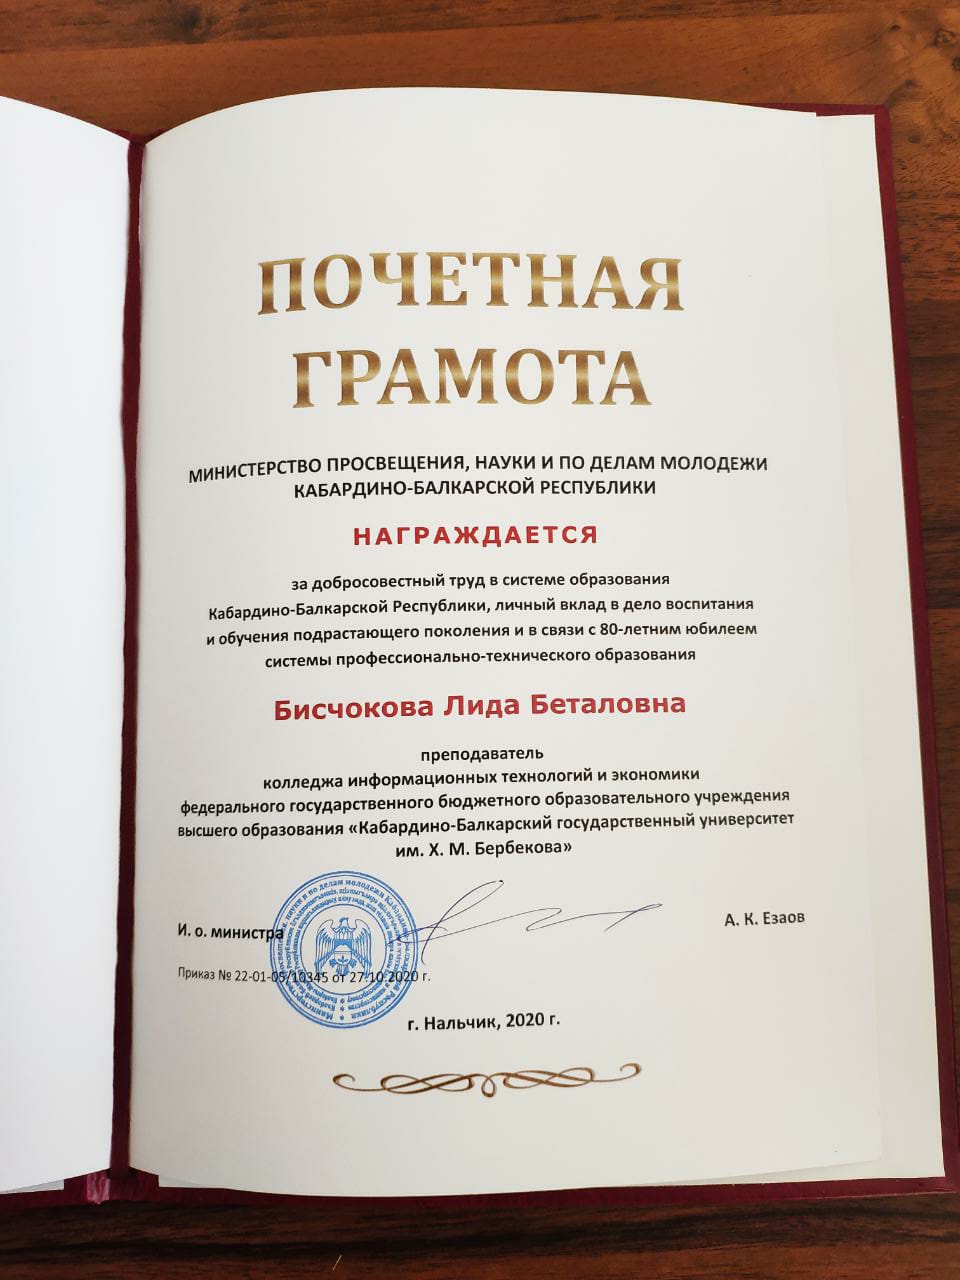 Директор КИТиЭ Этуева З.Х. и преподаватель Бисчокова Л.Б. были удостоены почетной грамотой от Министерства просвещения